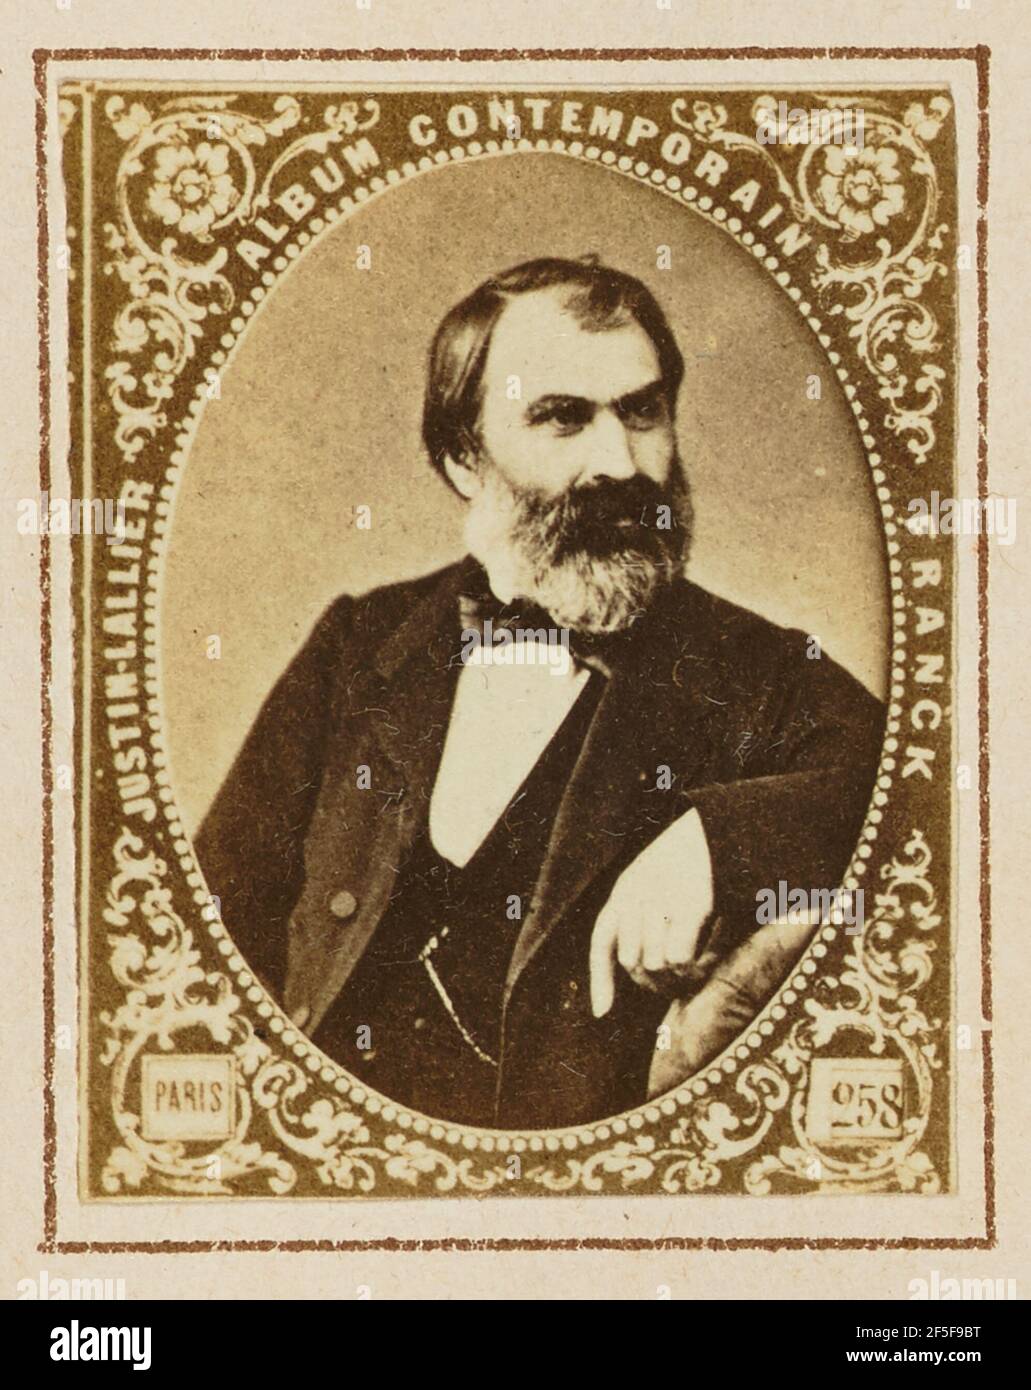 Eugène Pelletan. Stock Photo